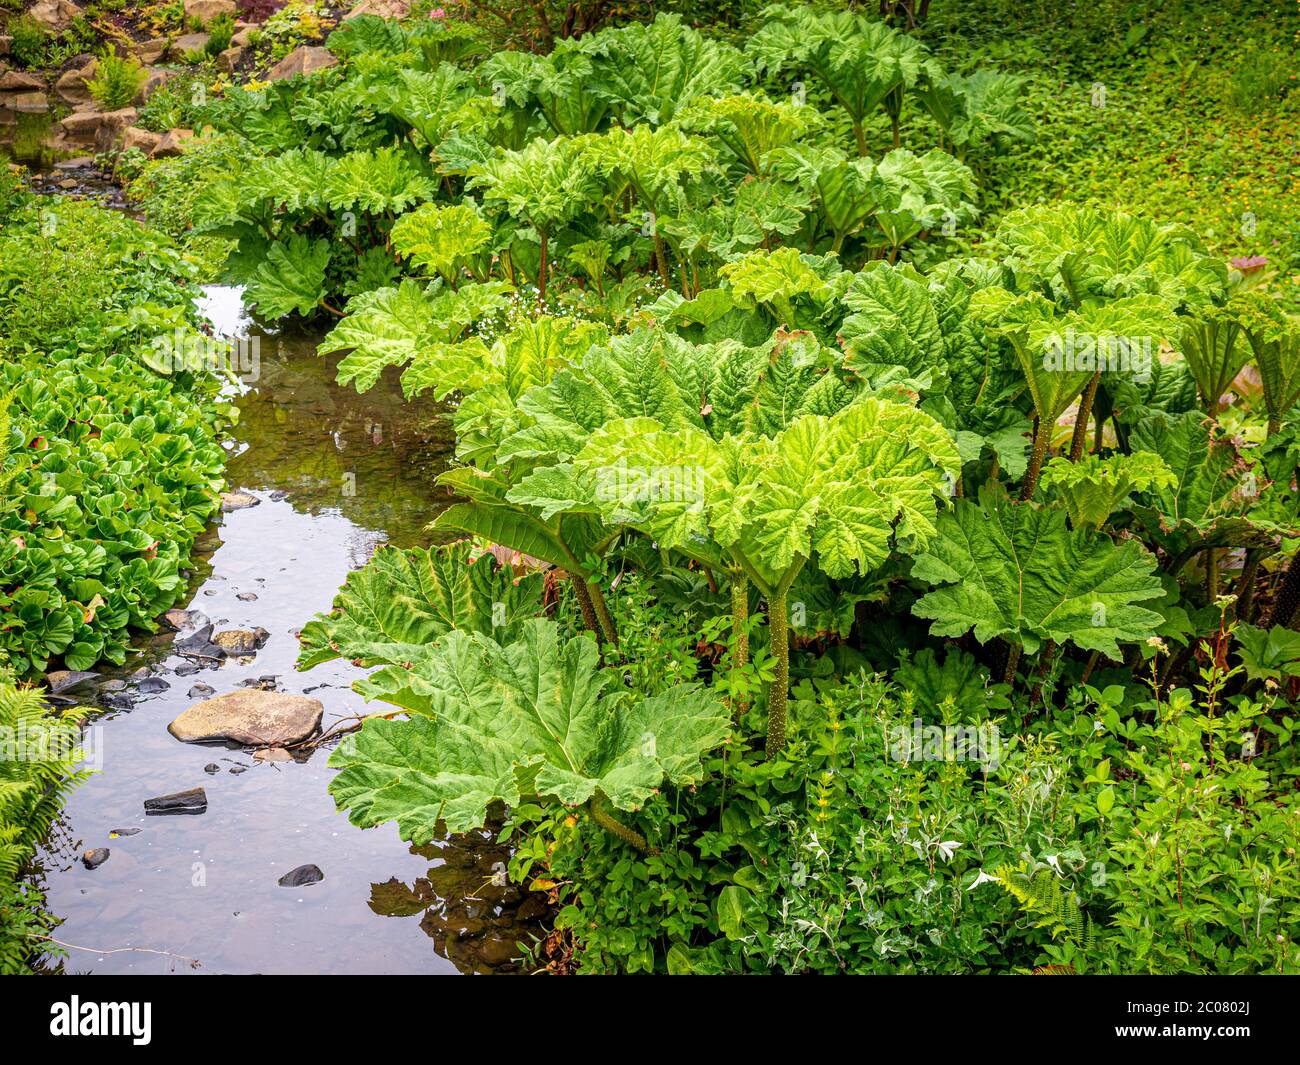 Gunnera manicata, auch bekannt als Riese Rhabarber wächst neben einem Bach in einem britischen Garten. Stockfoto